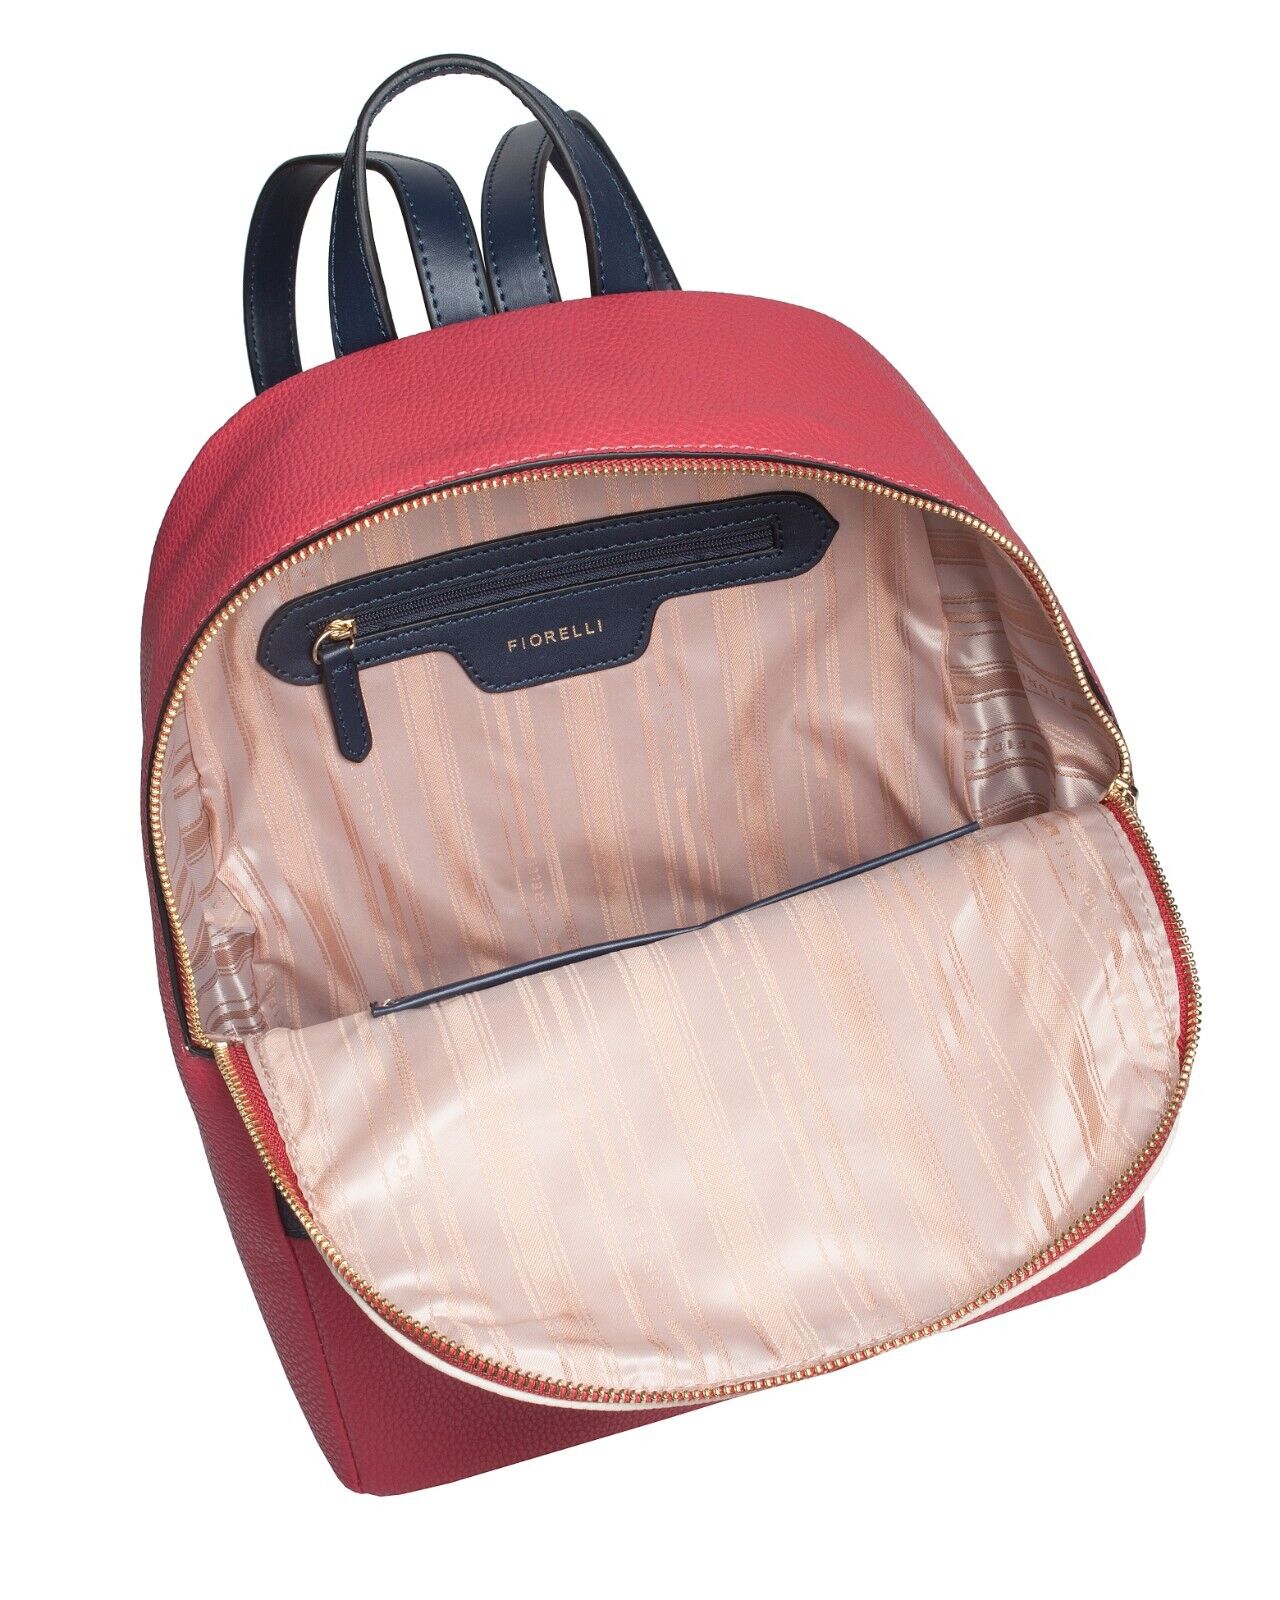 Fiorelli Trenton Nautical Backpack Medium RRP £65